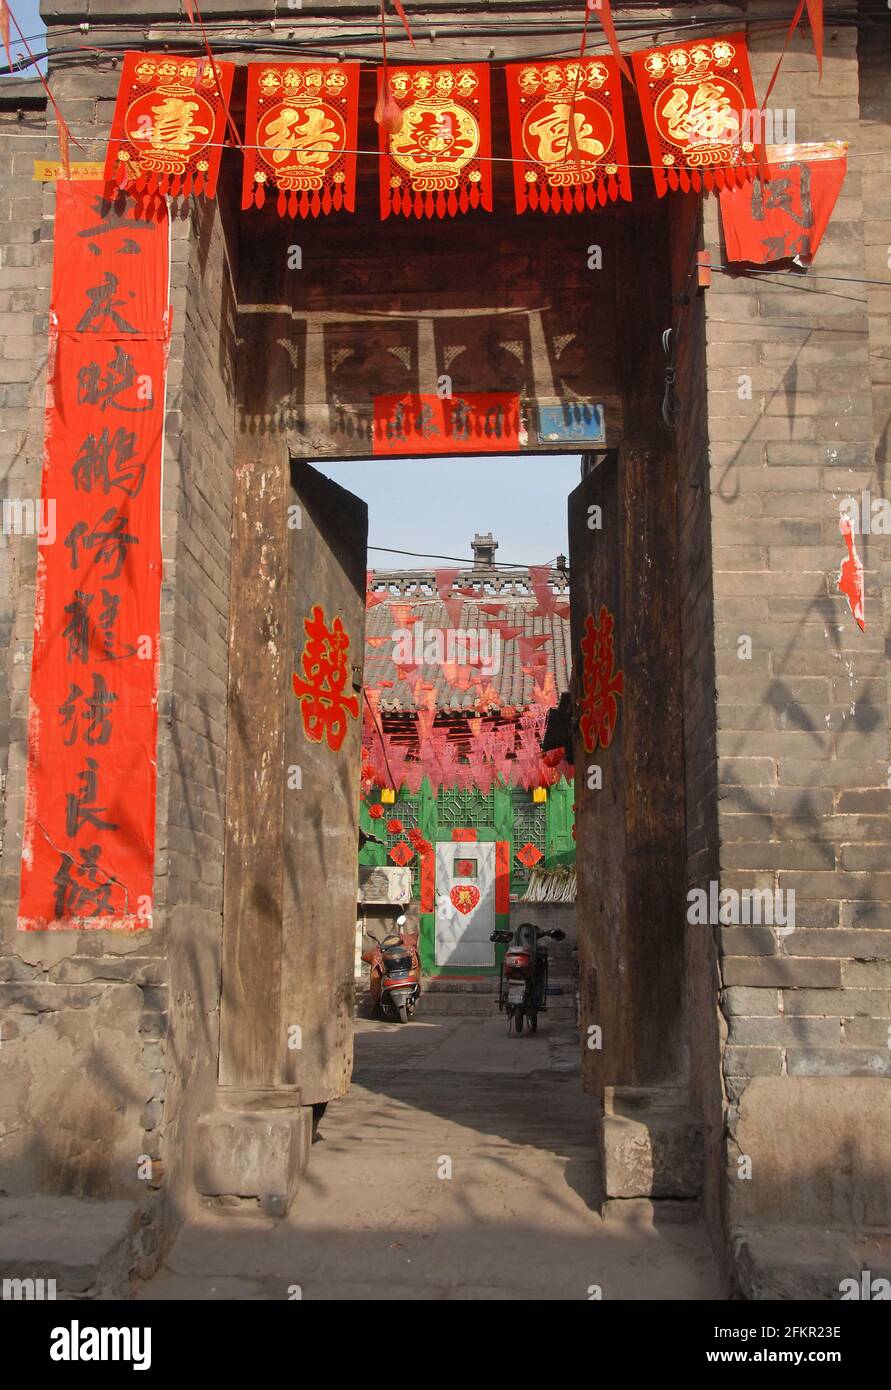 Vue sur une cour à Pingyao, province du Shanxi, Chine avec l'entrée décorée de bannières rouges et de textes chinois. Banque D'Images